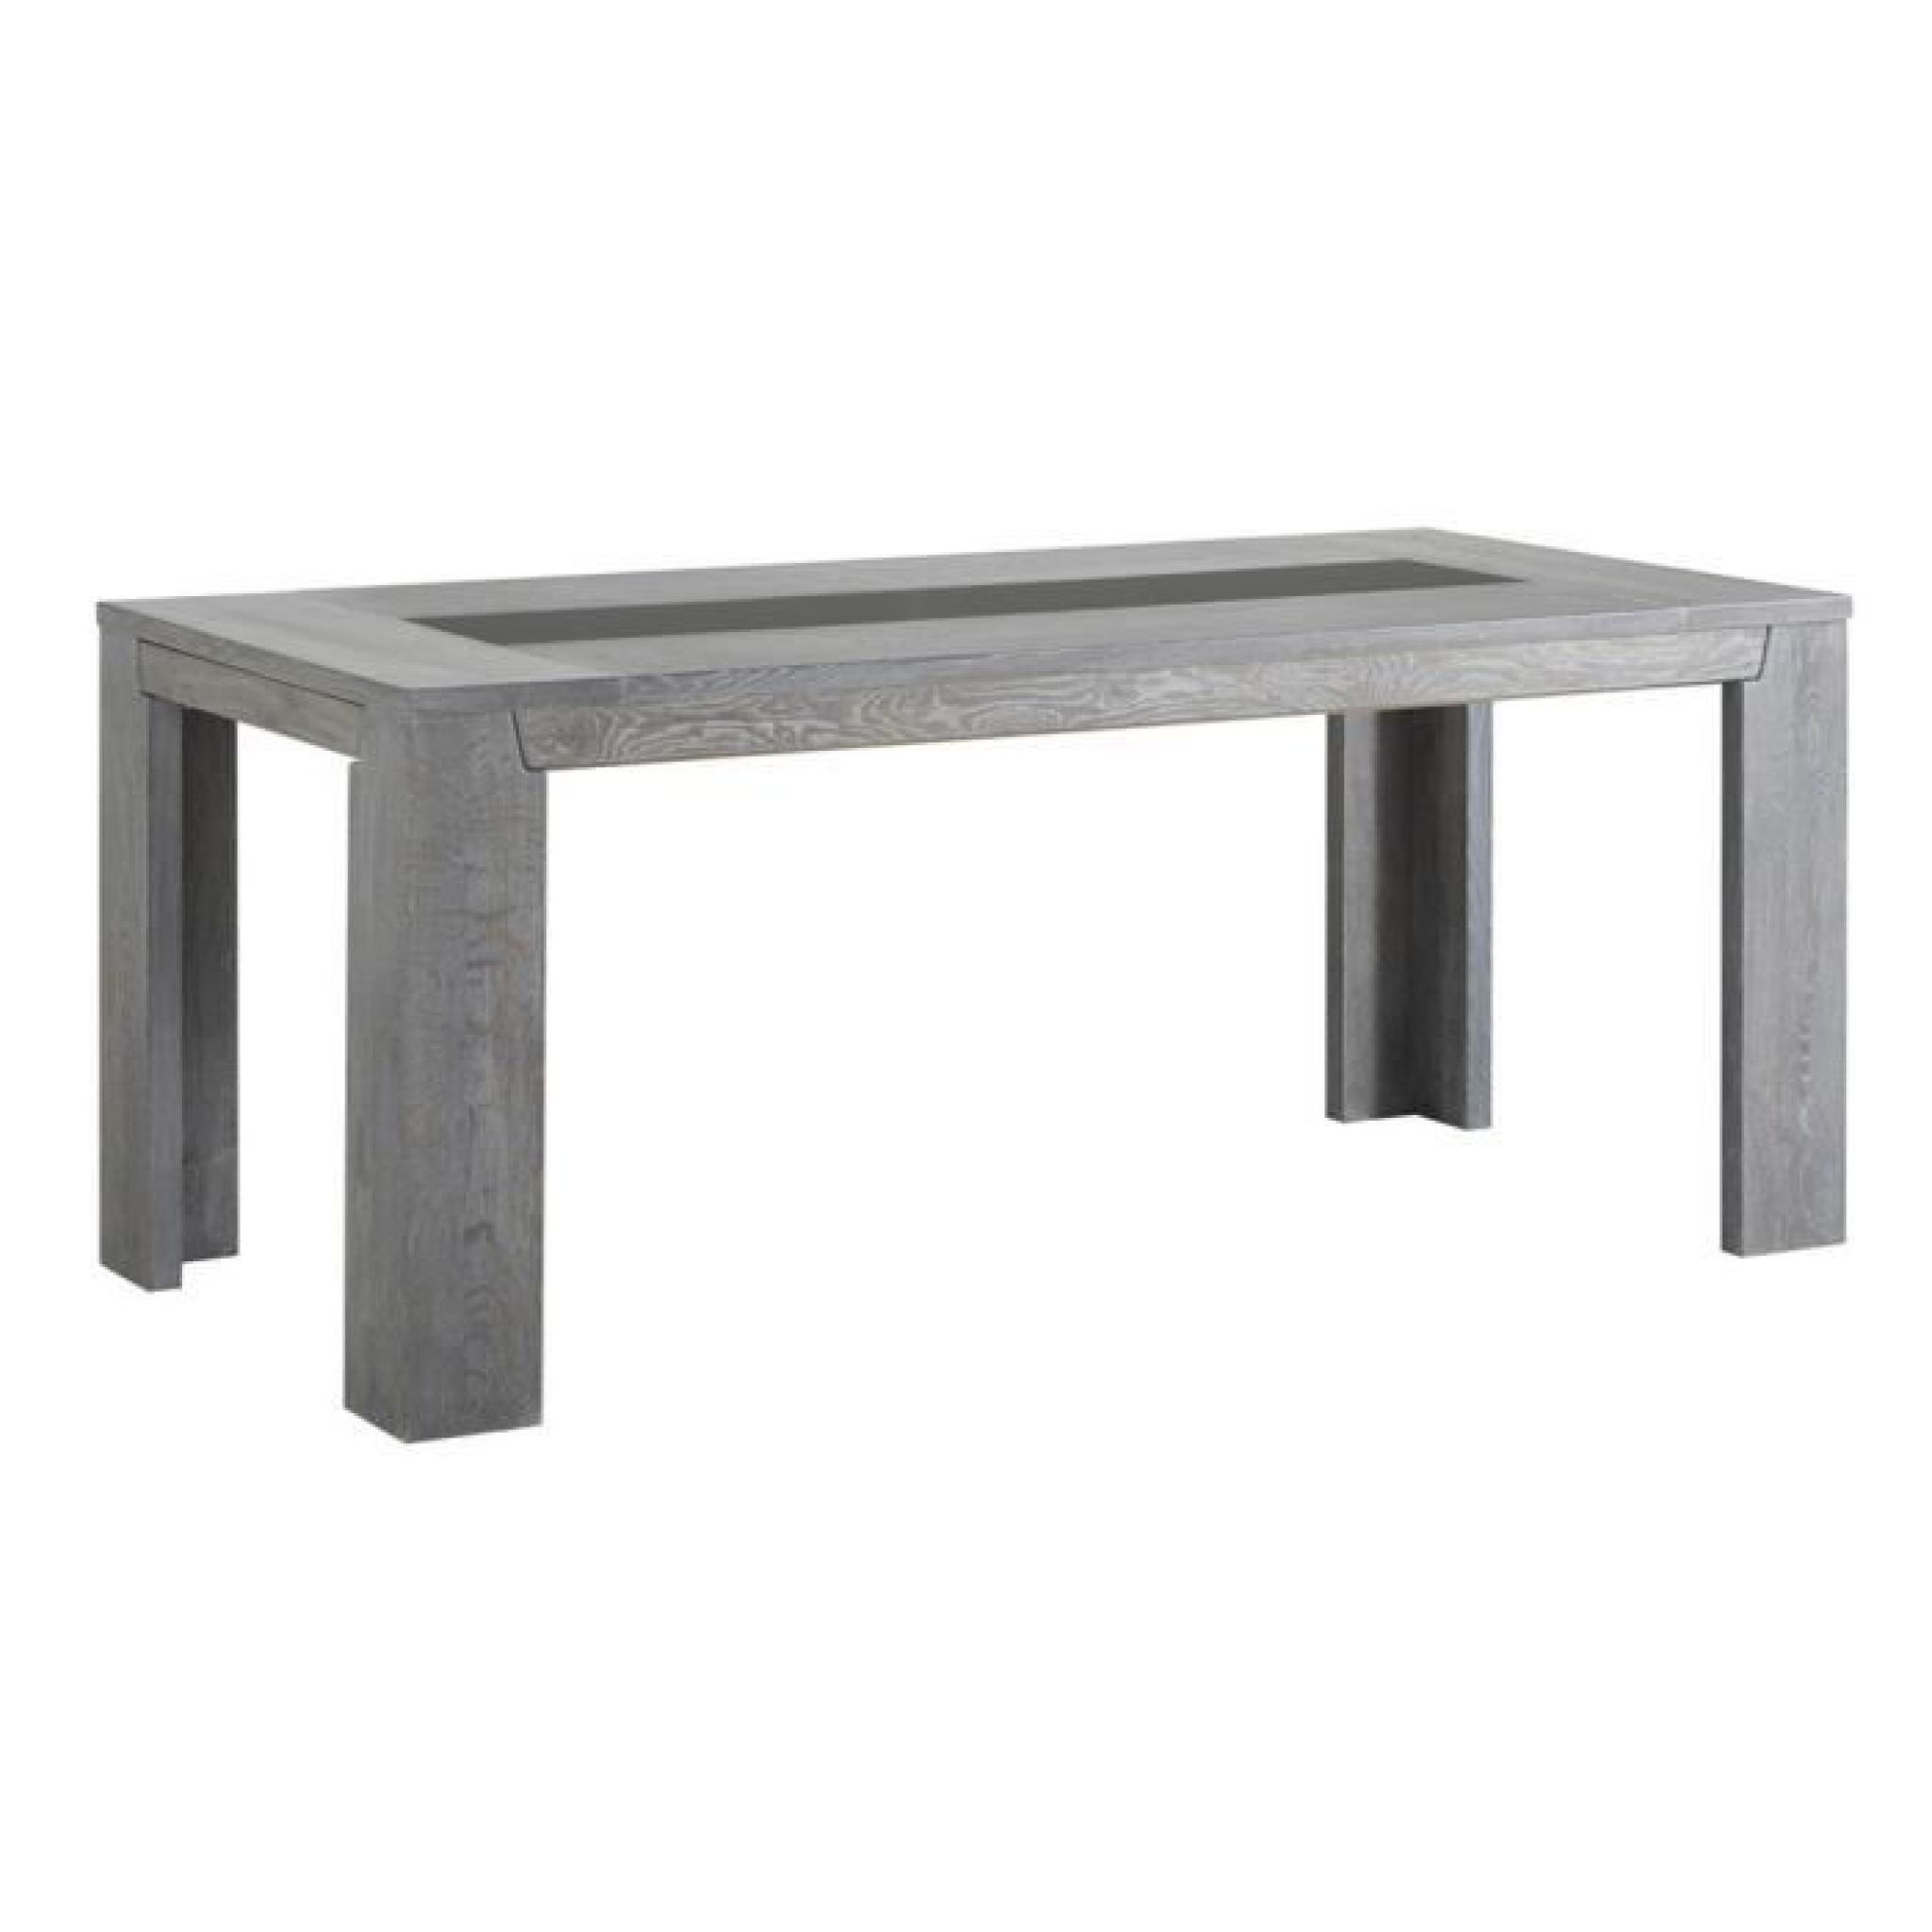 Table de repas rectangulaire coloris Chêne gris, H 77 x L 190 x P 90 cm